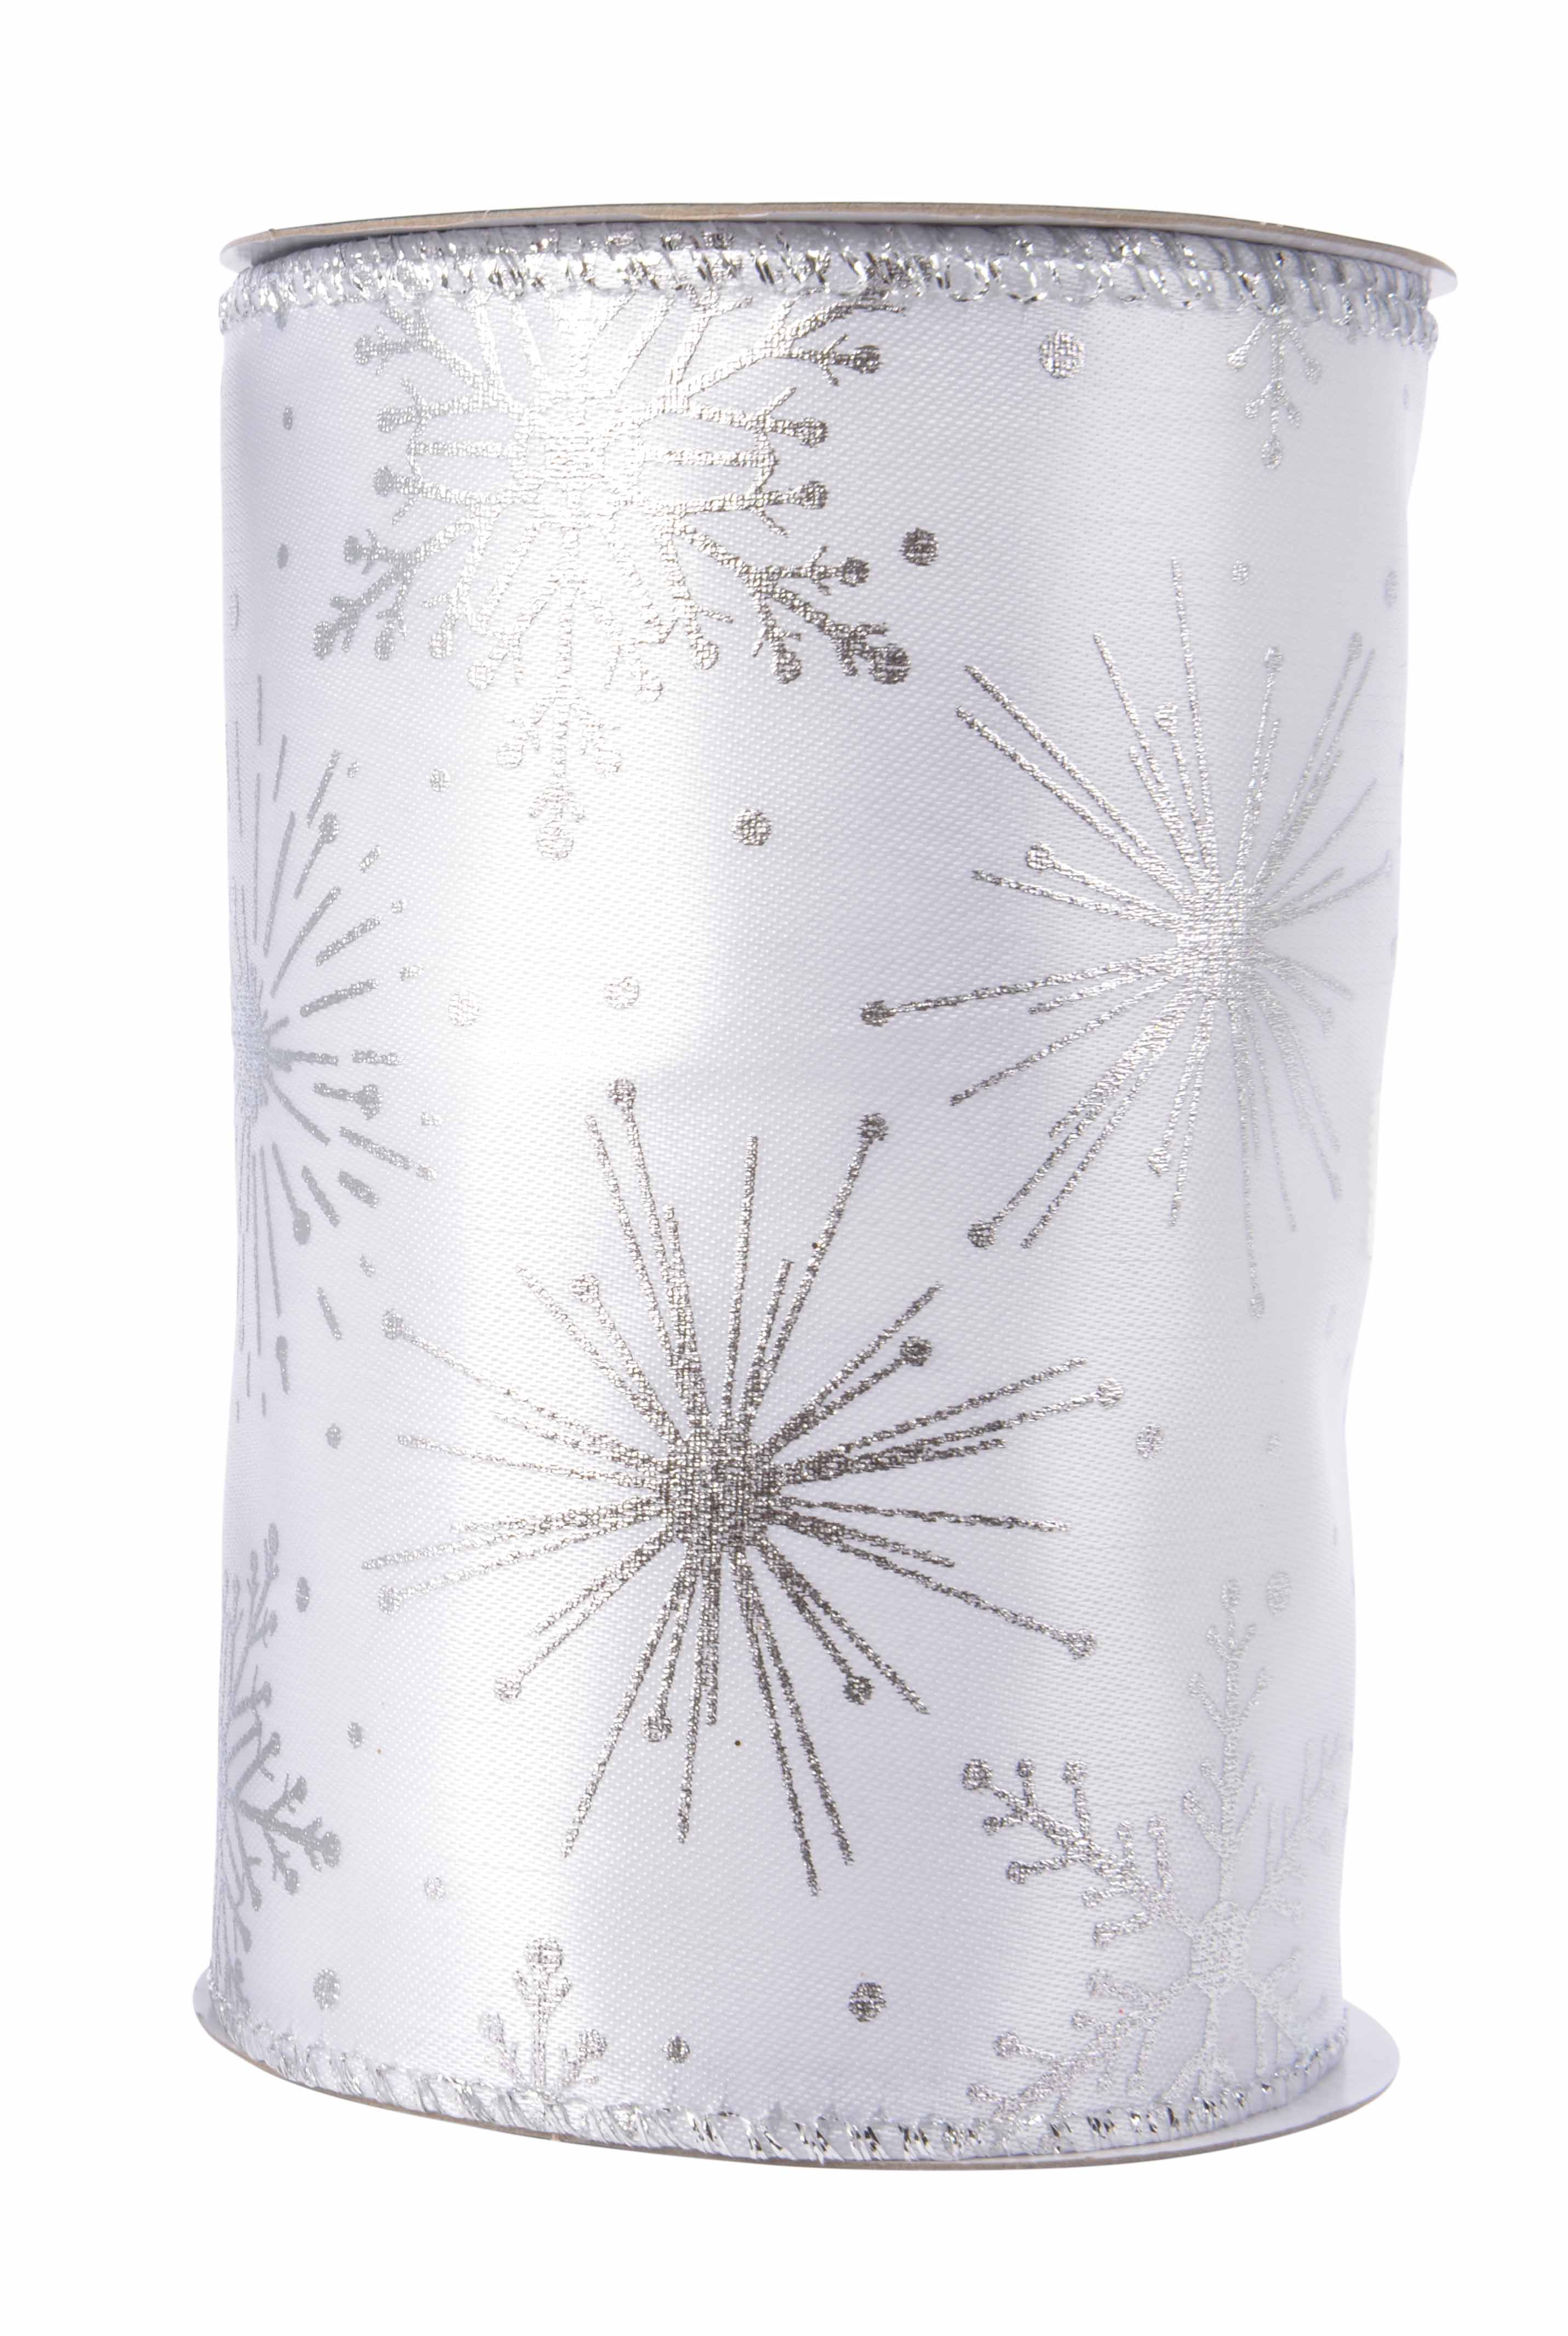 Satinband weiß mit Drahtkante Schneeflocken silber Glitter 12,7x270cm